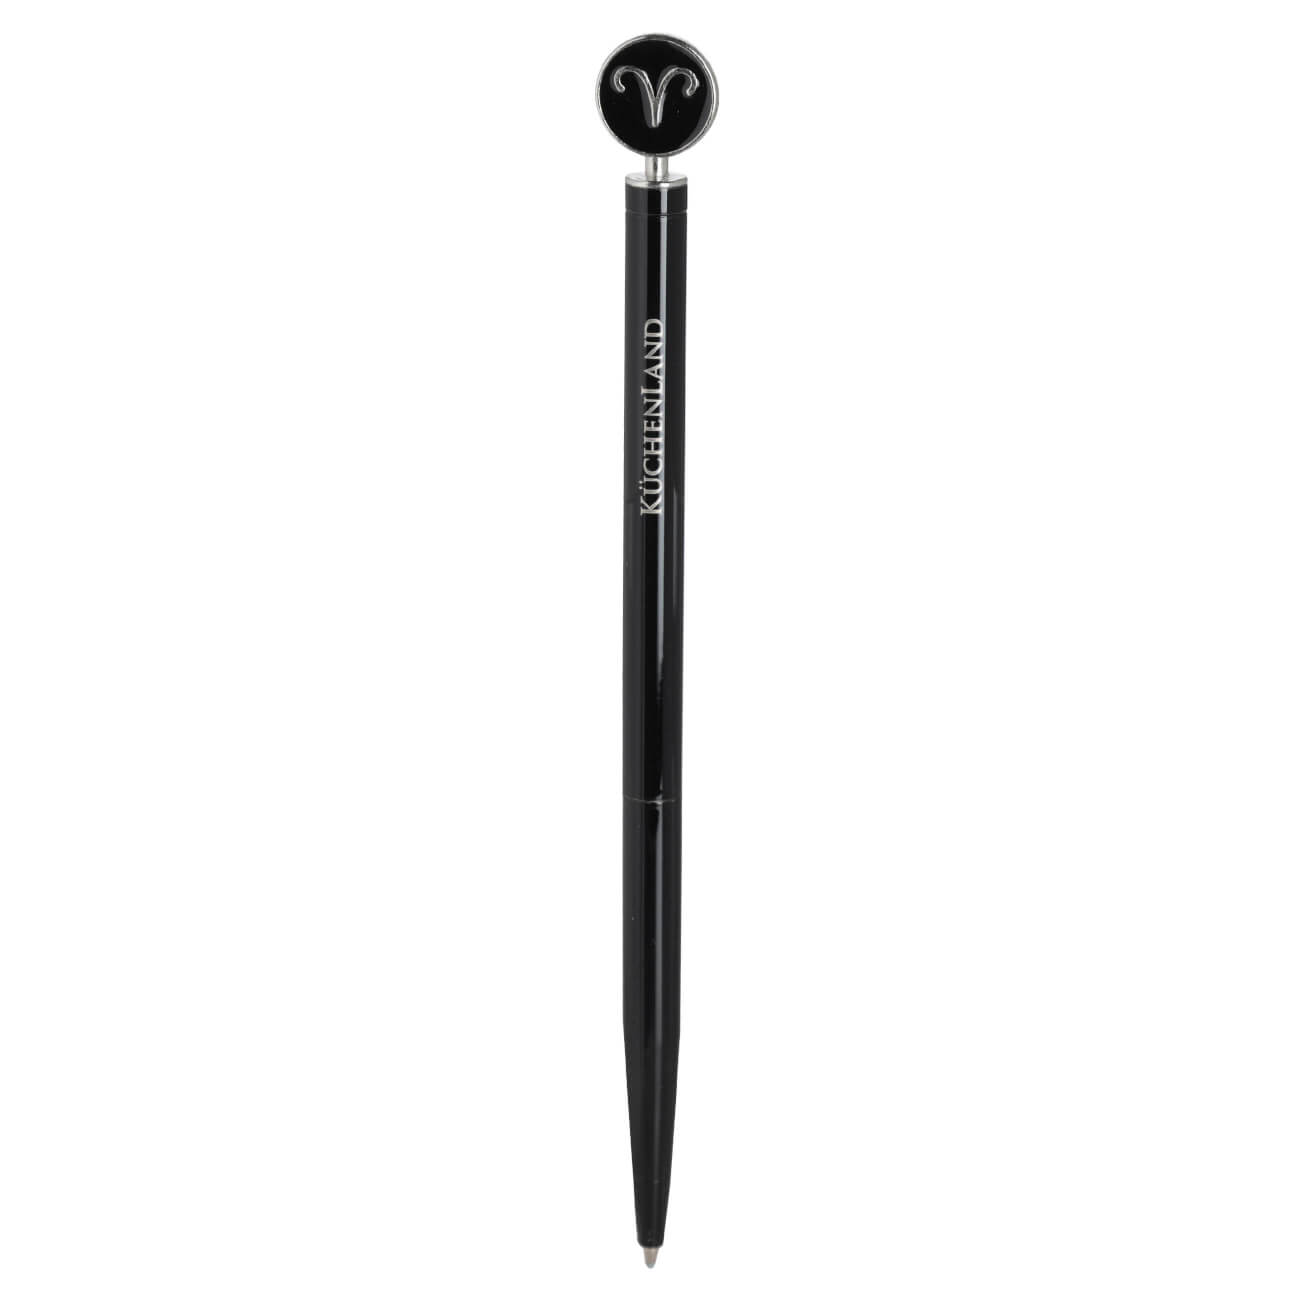 Ручка шариковая, 15 см, с фигуркой, сталь, черно-серебристая, Овен, Zodiac трехгранная масляная ручка шариковая brauberg